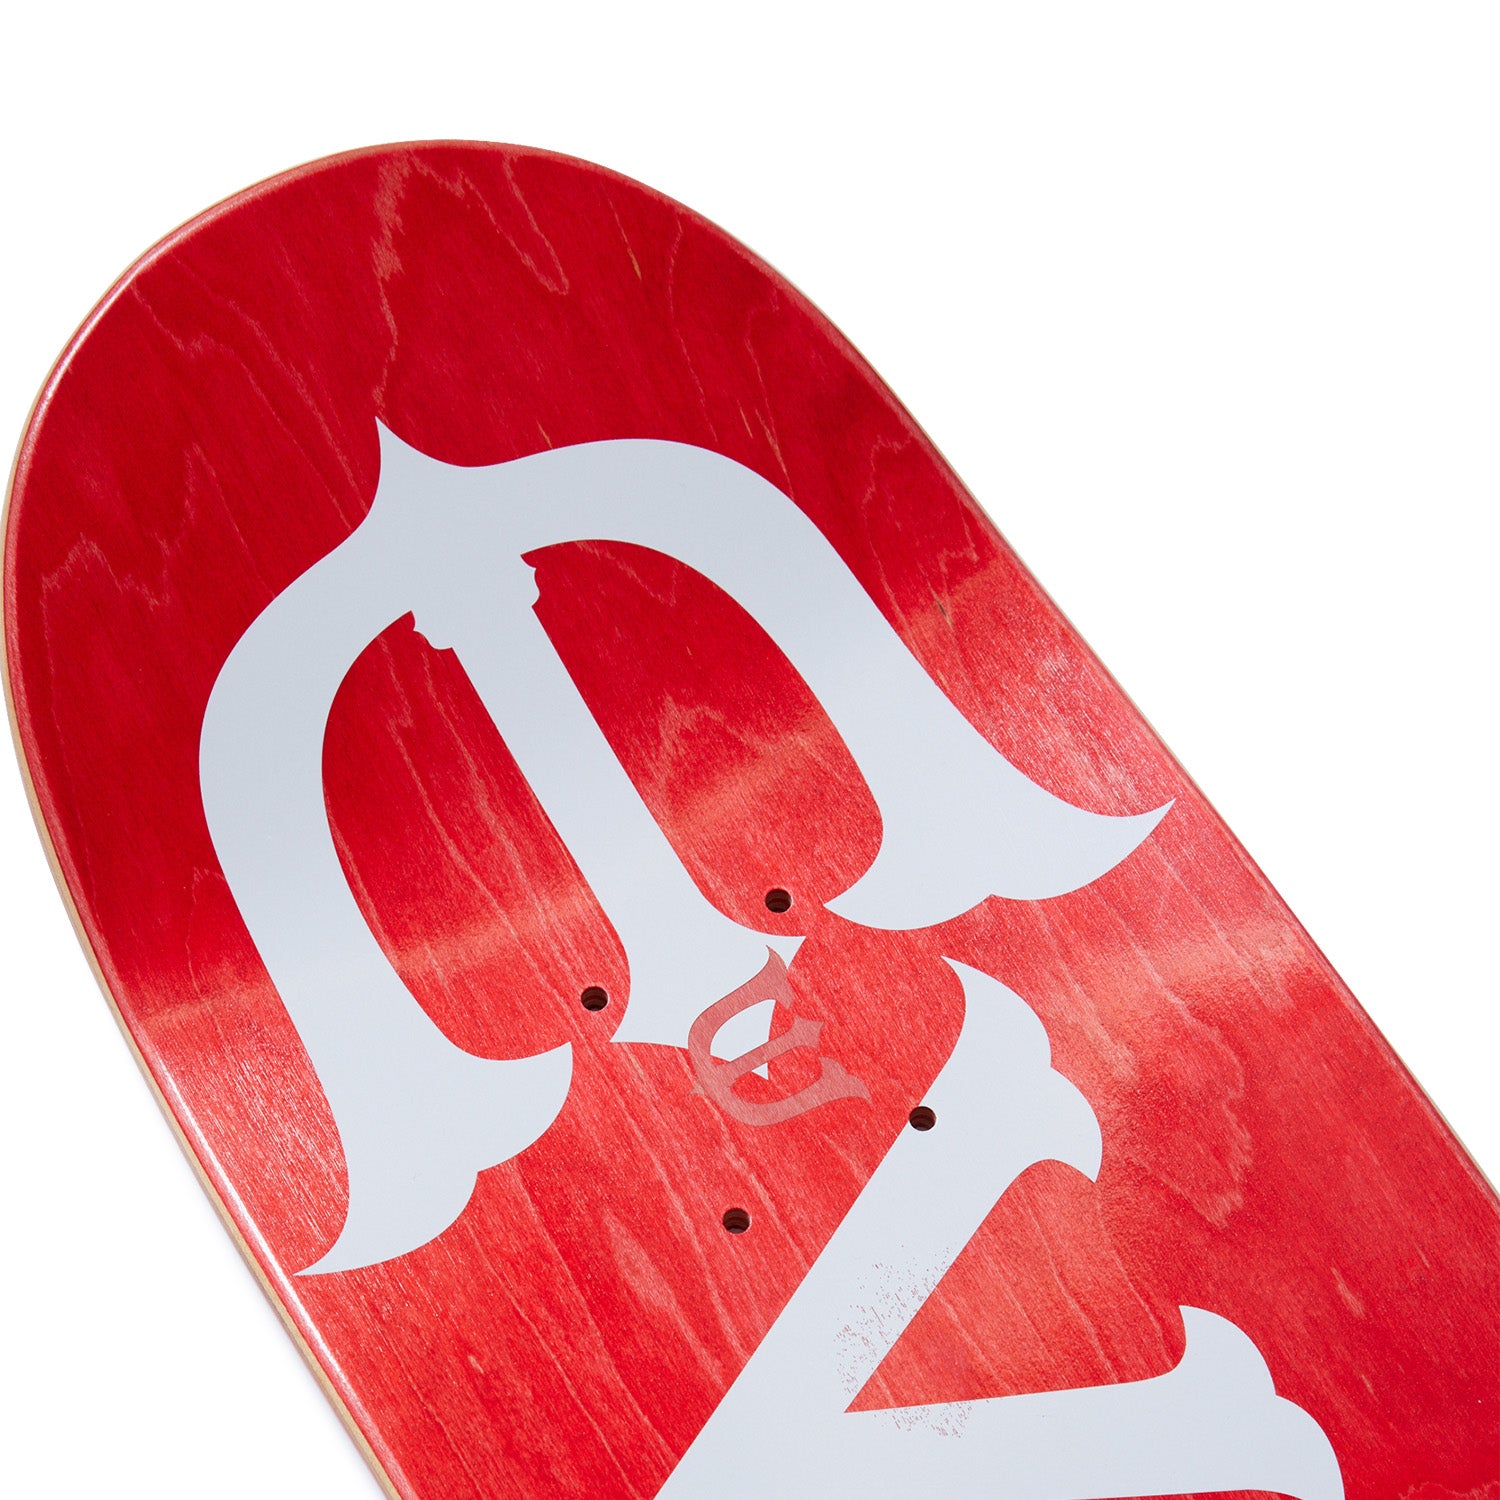 【8.25】Evisen Skateboards - Evi-Logo "White"